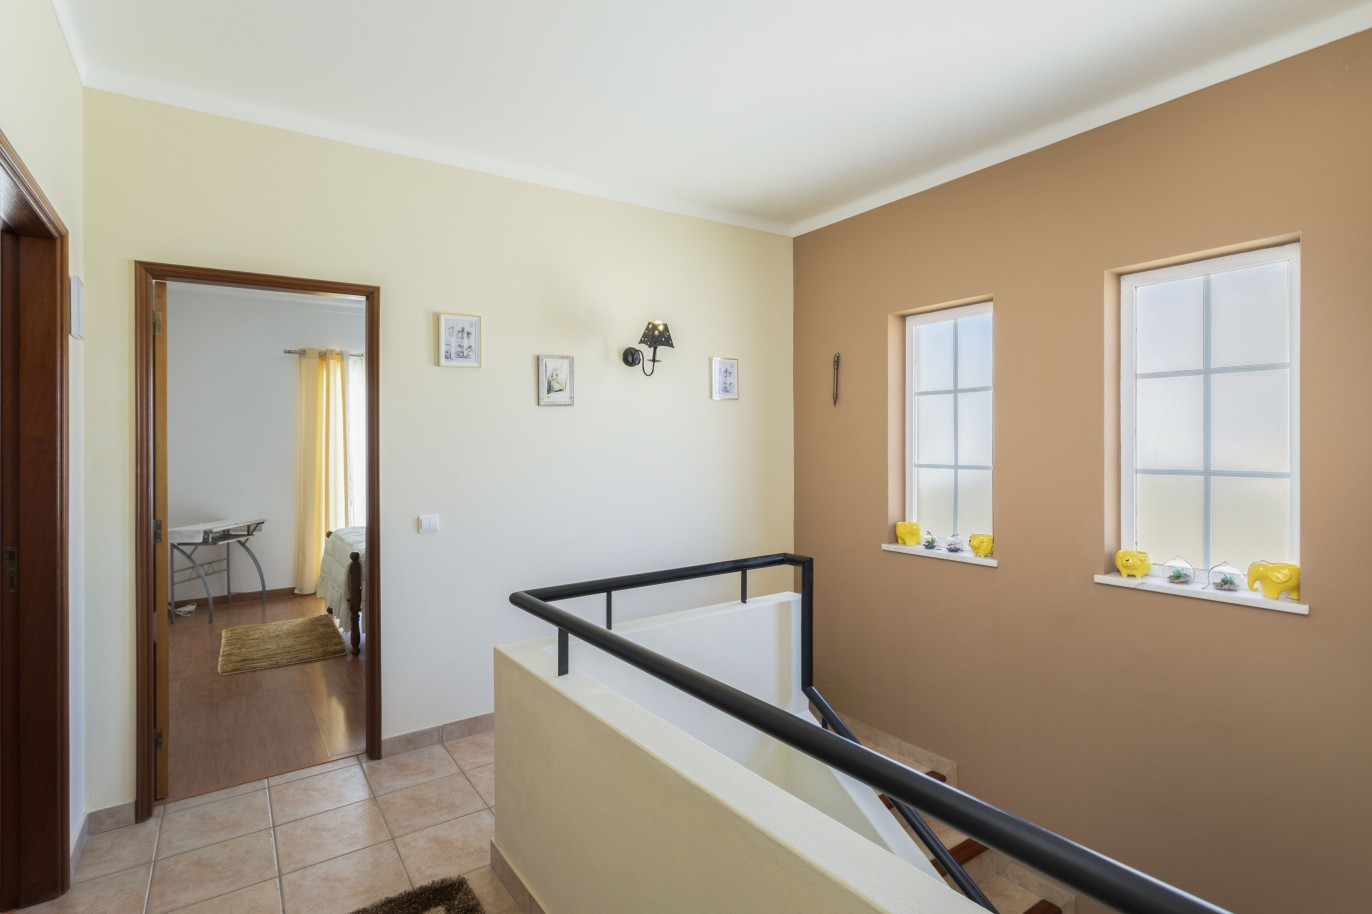 3 bedroom villa for sale in Porto de Mós, Algarve_233233